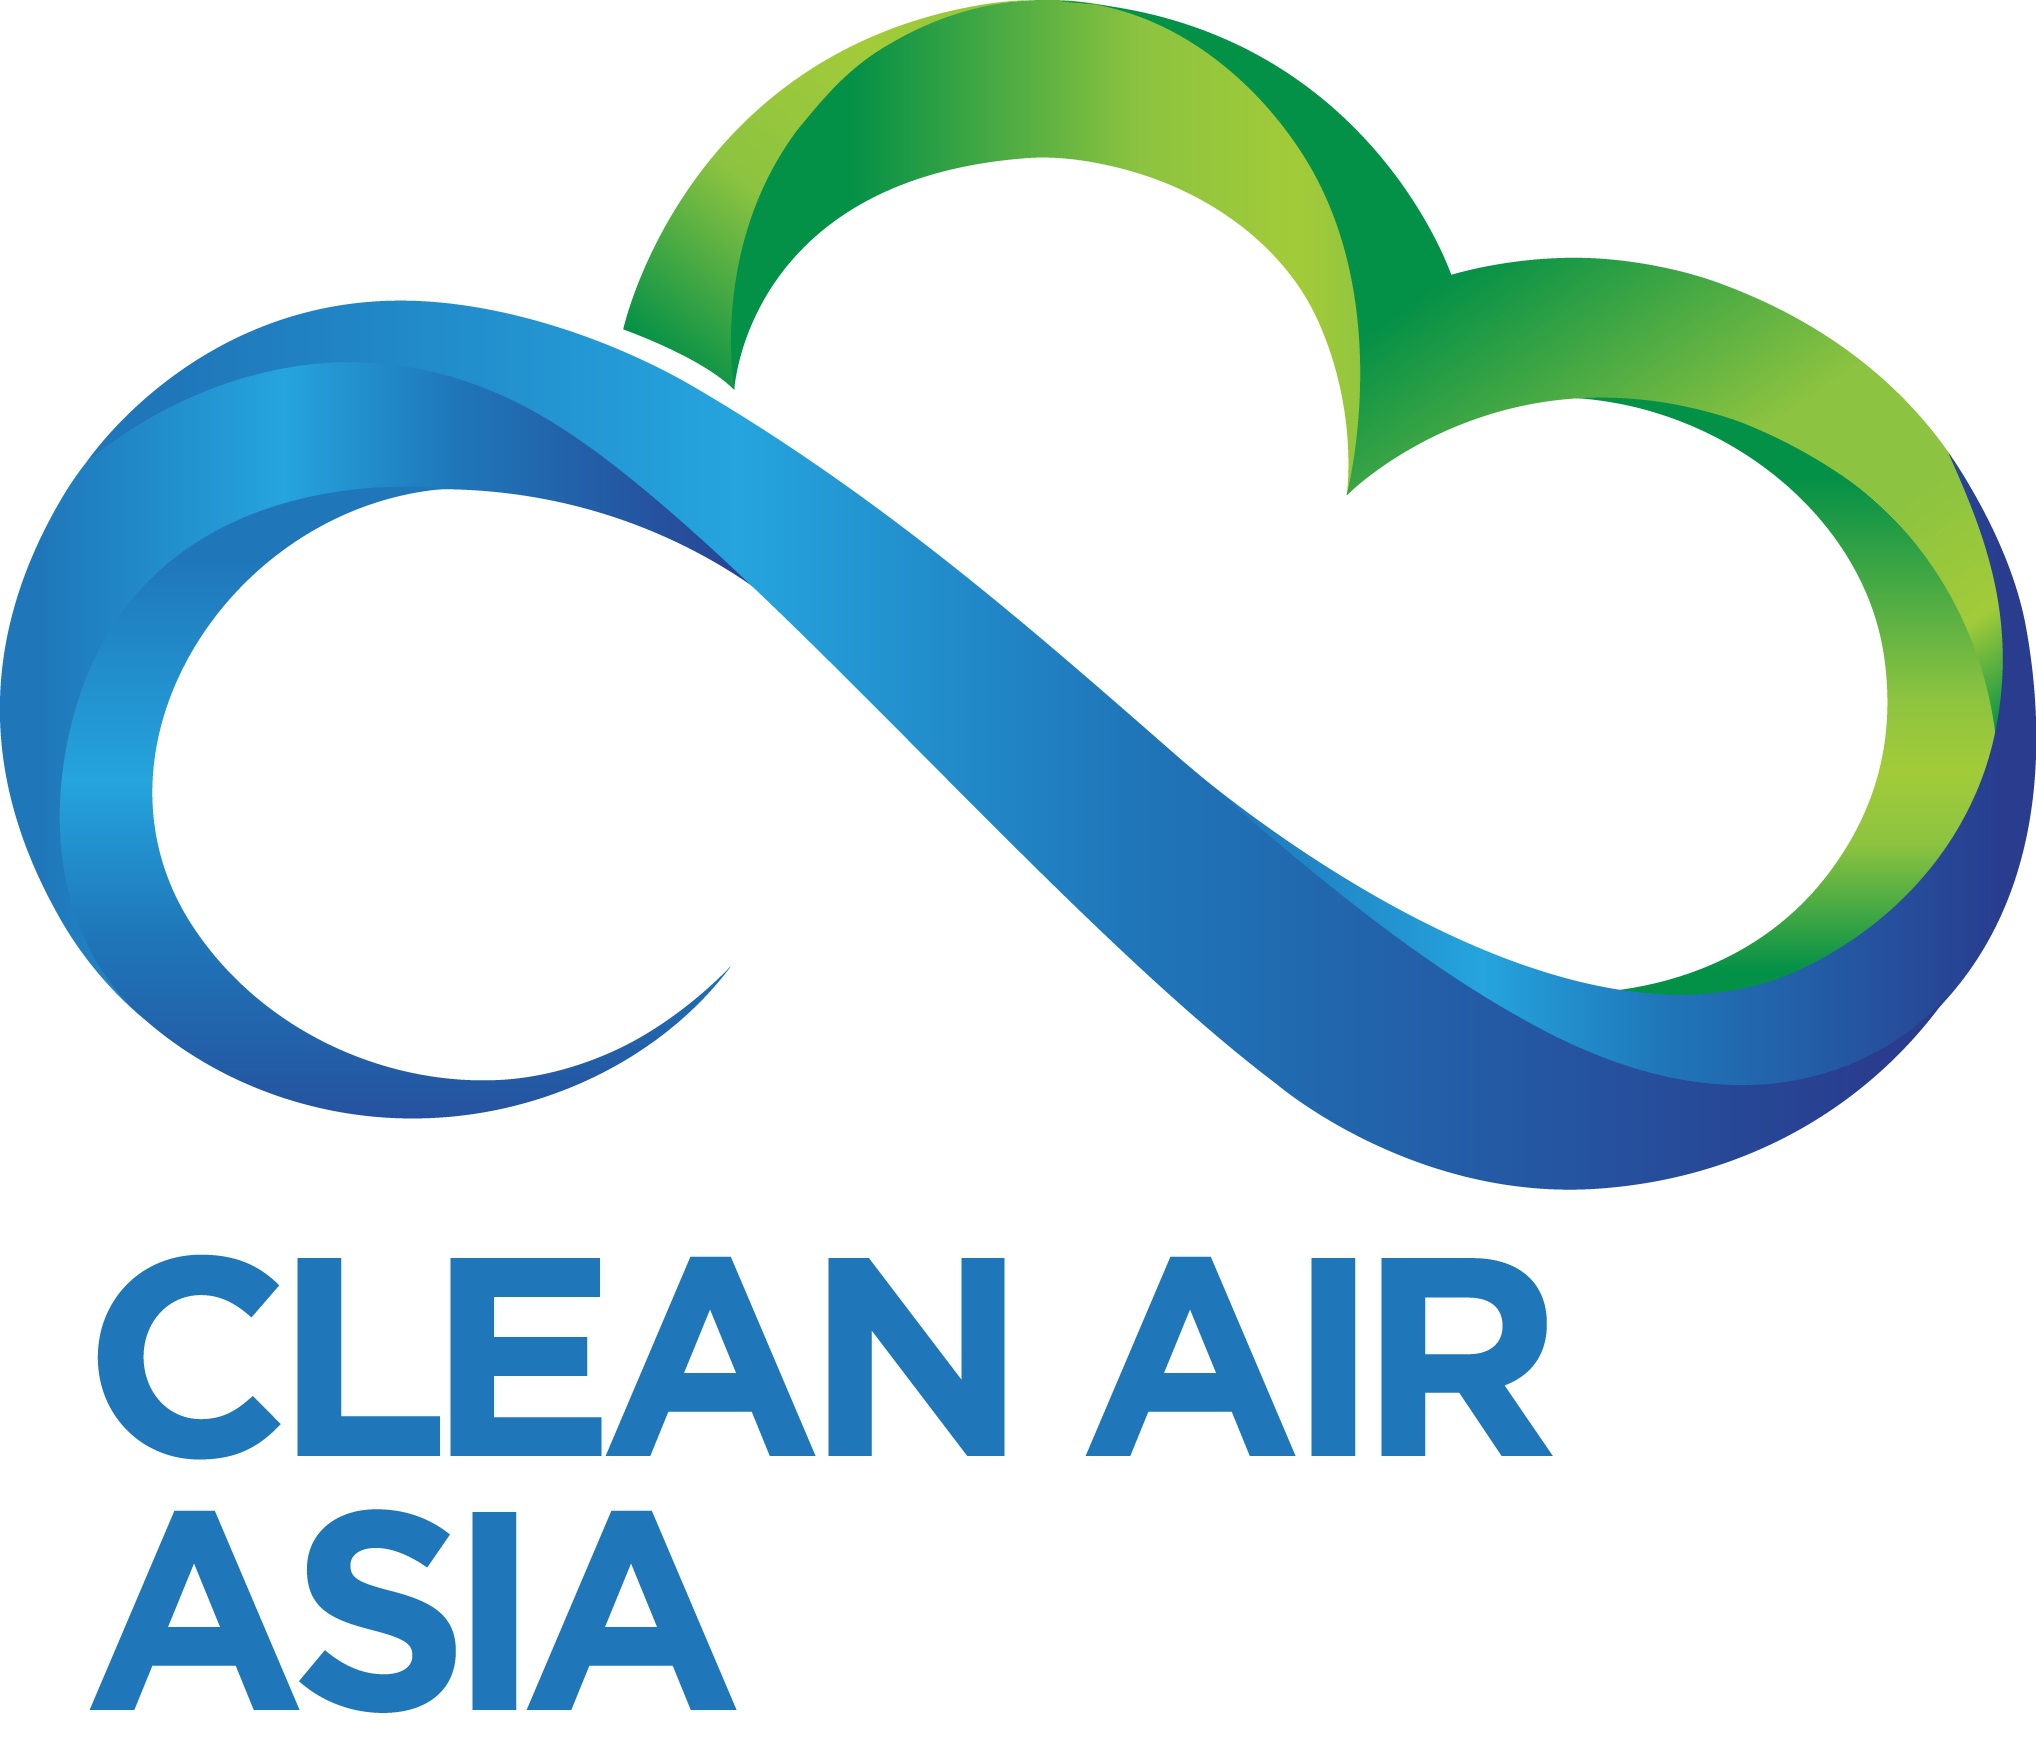 Clean Air Asia